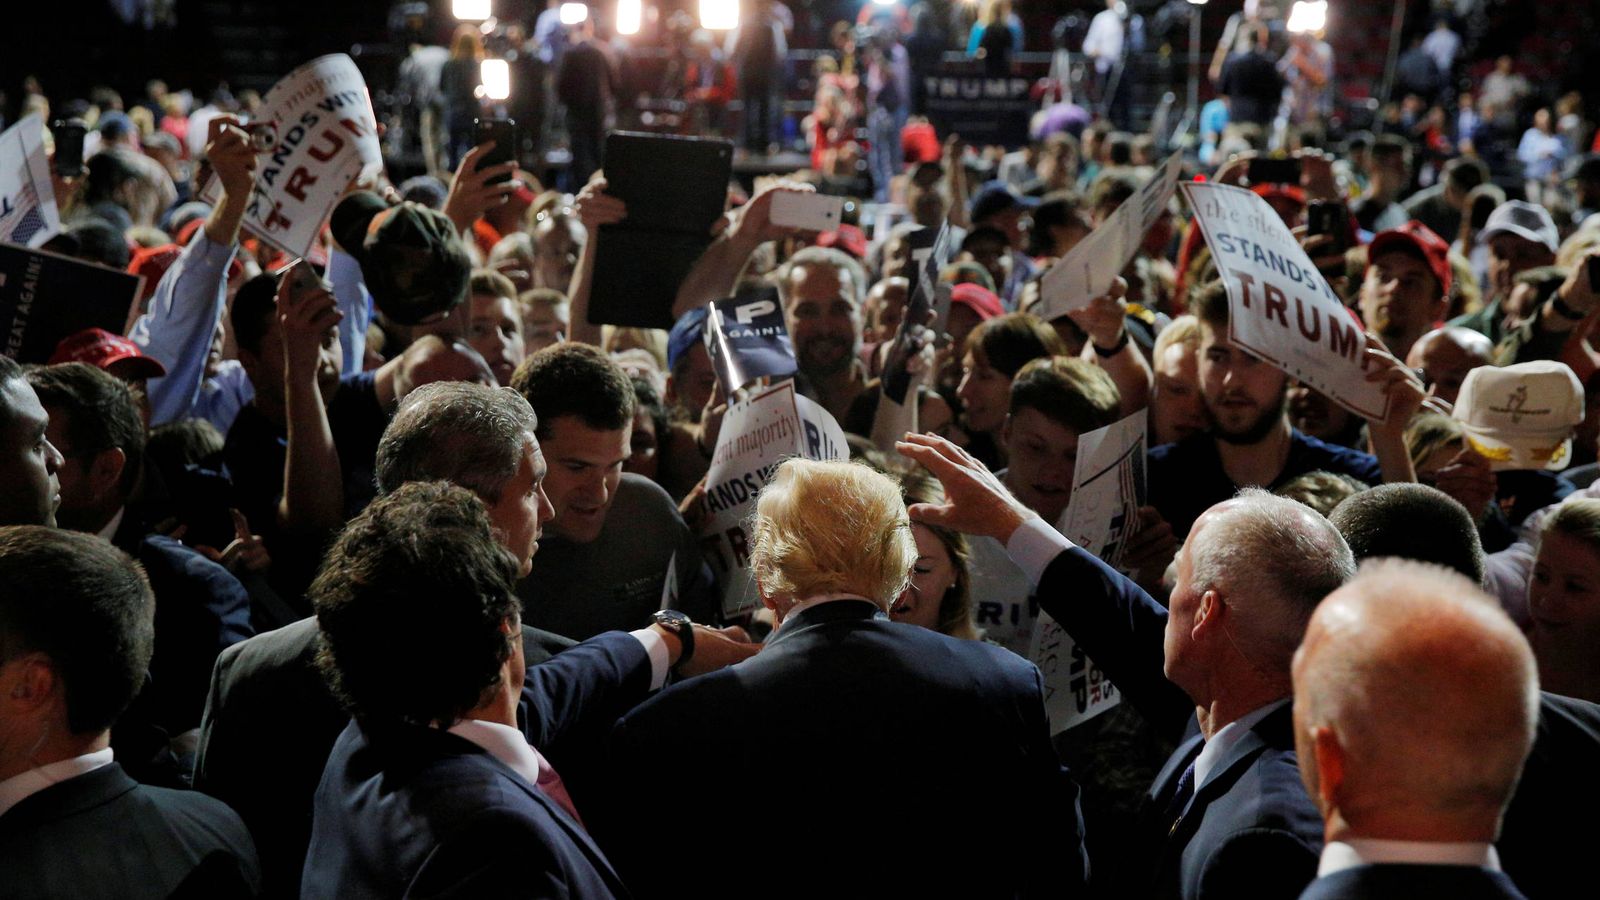 Foto: El candidato republicano Donald Trump saluda a simpatizantes durante un acto de campaña en Bangor, Maine (Reuters).